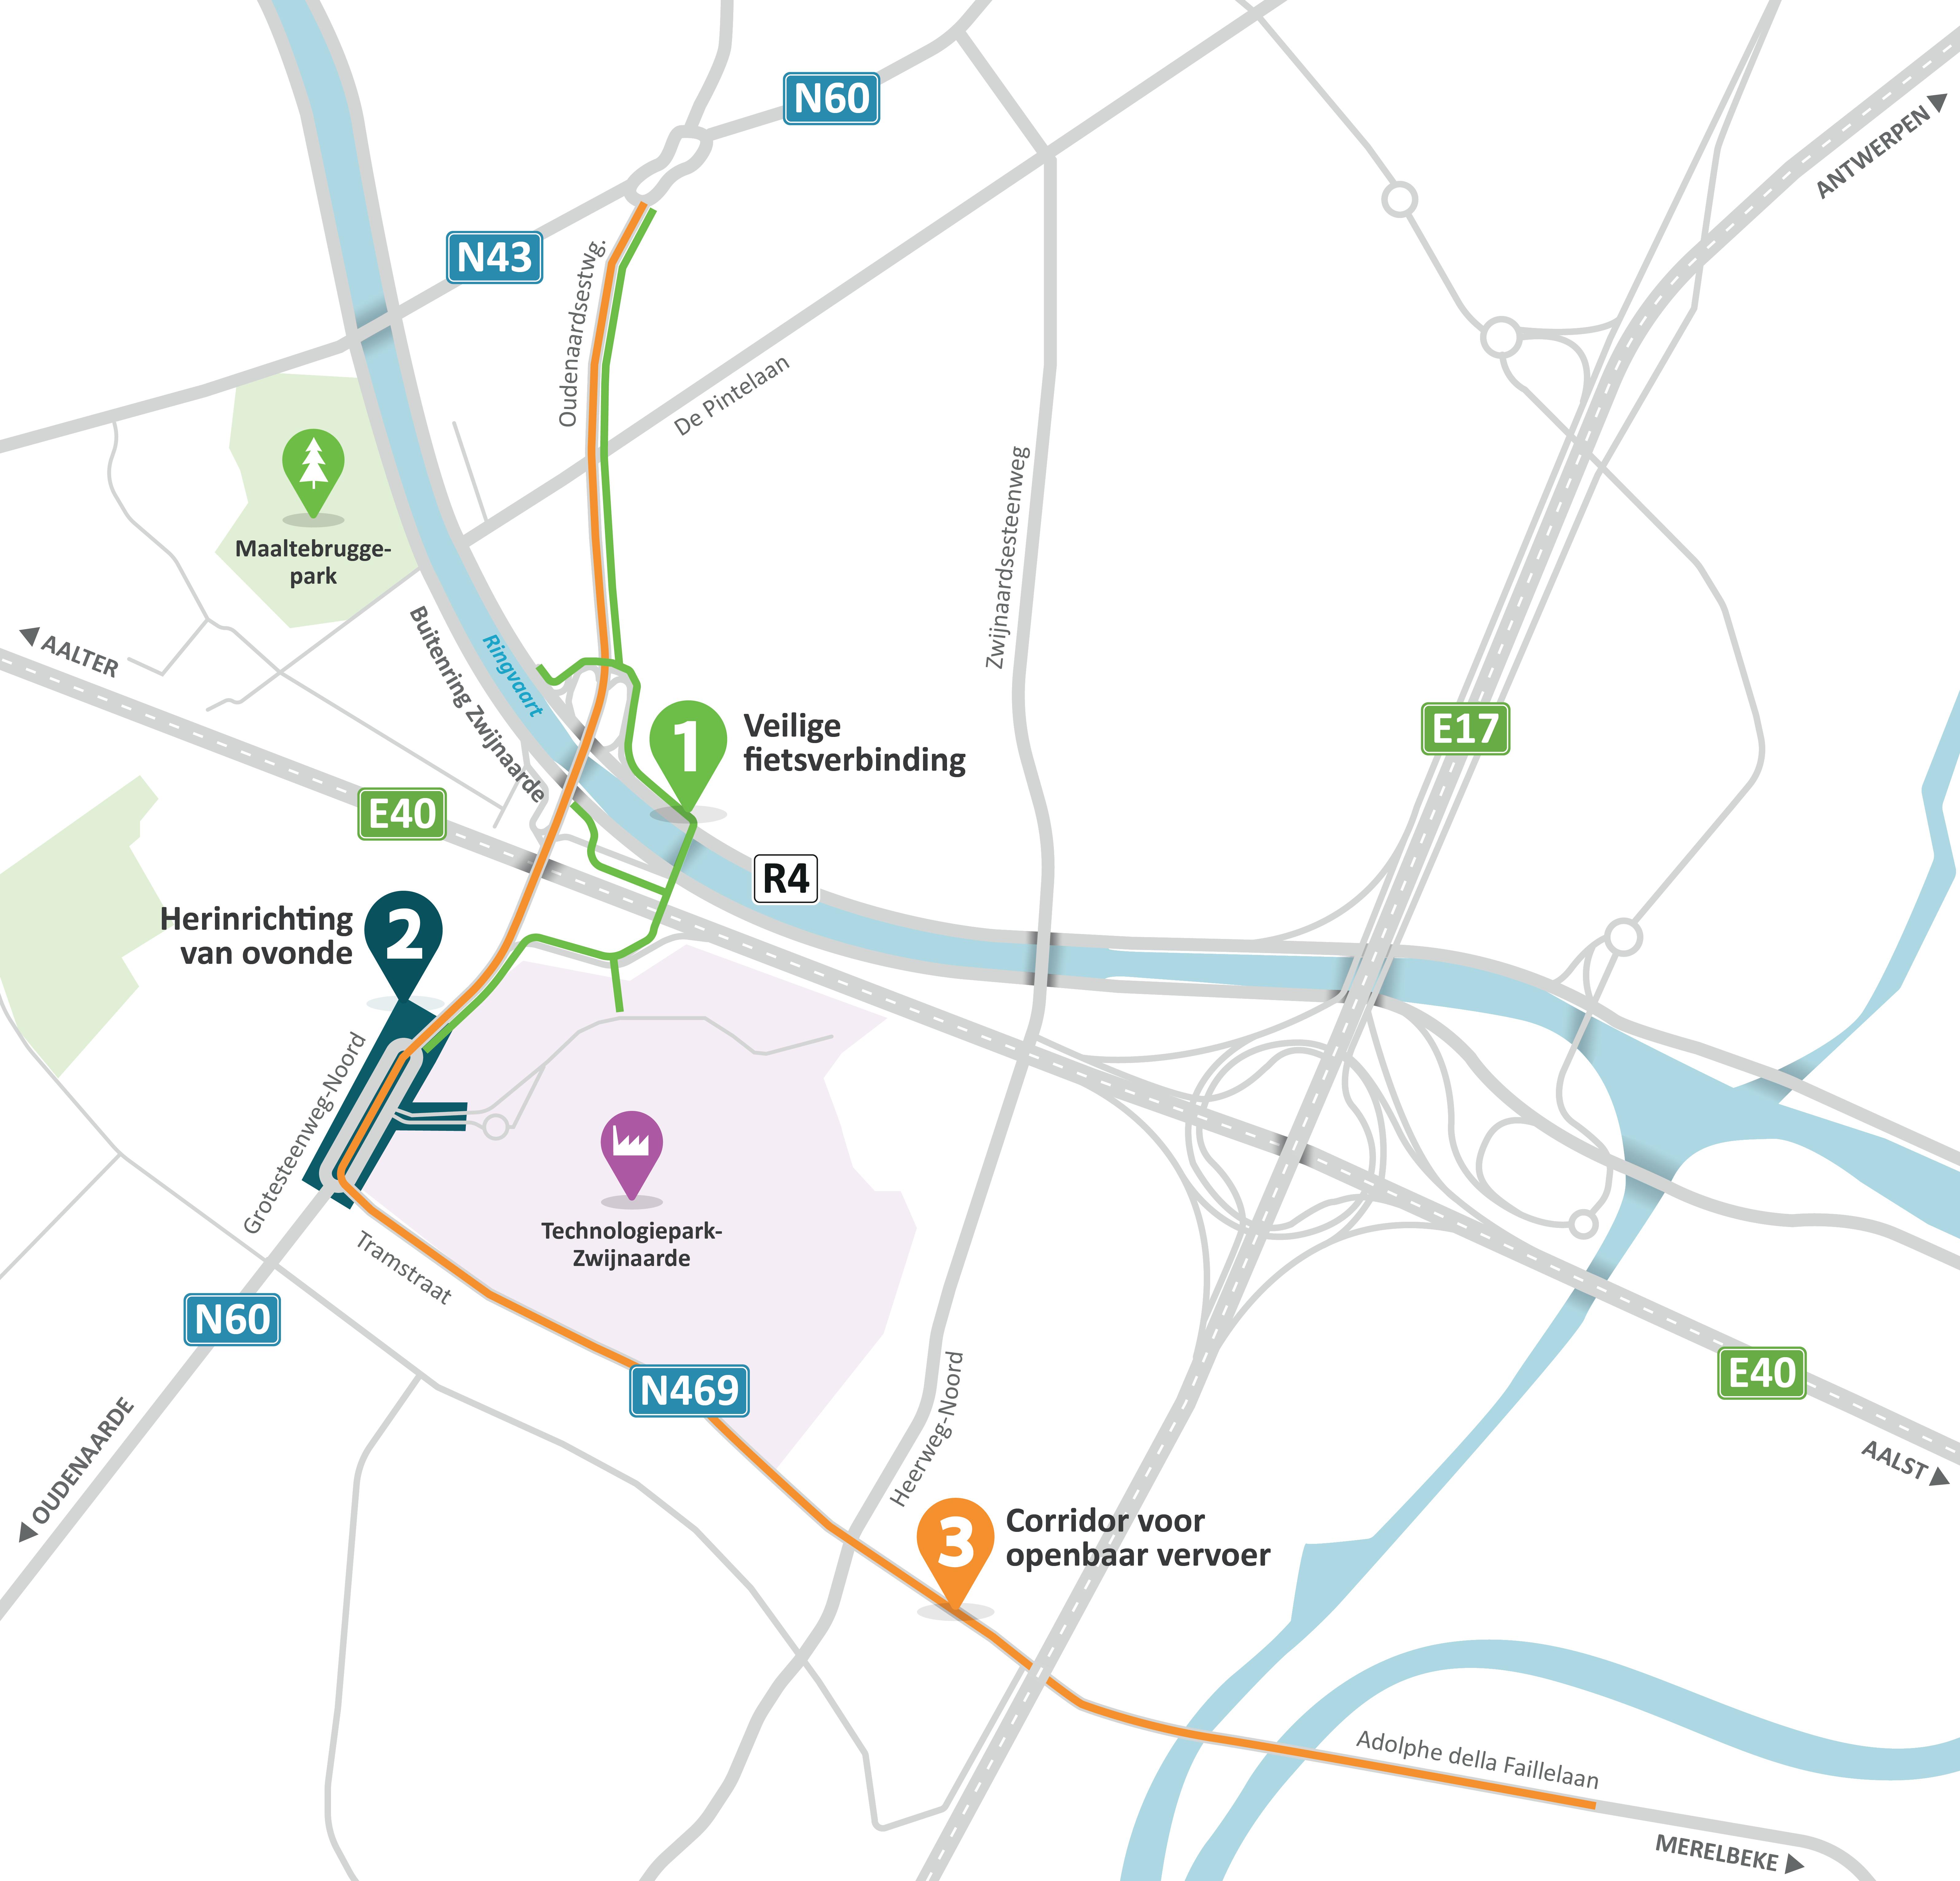 Deze kaart toont de drie onderdelen van het project: een vlotte en veilige fietsverbinding (samen met een fietsbrug), de herinrichting van de ovonde en de corridor voor het openbaar vervoer.